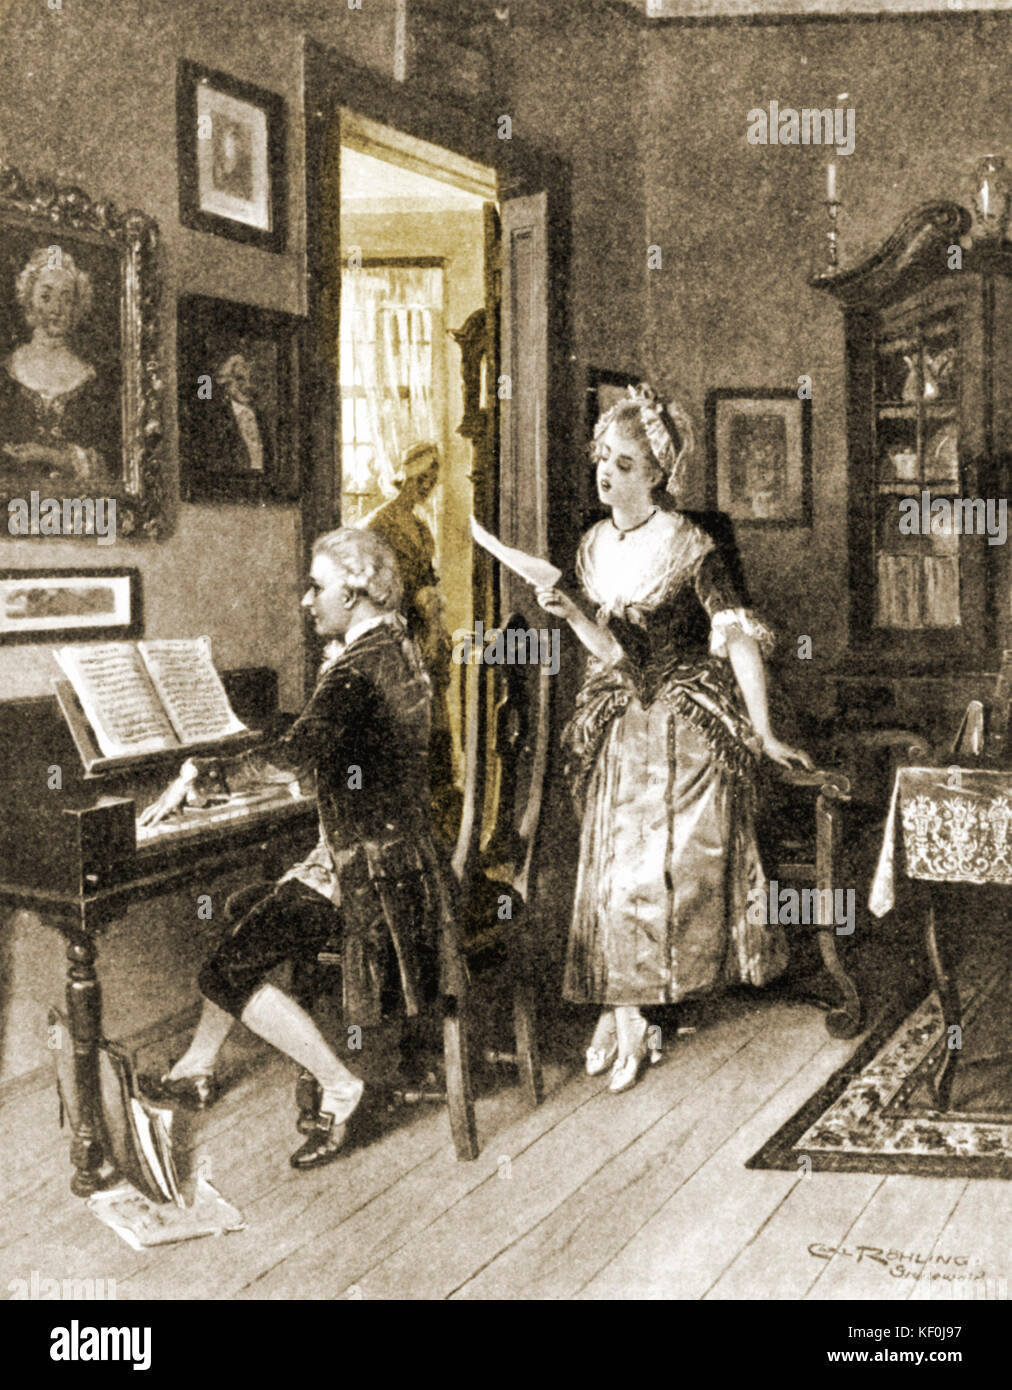 Wolfgang Amadeus. Mit Aloysia Weber Aloysia Weber war eine ältere Schwester von Konstanze/Bodensee/Konstanz, die später heiratete Mozart. Diese Romanze wurde von Mozart's Vater, der auf das Gehör, Wolfgang Auf nach Paris bestellt gestoppt. Österreichischen Komponisten (1756-1791). Stockfoto